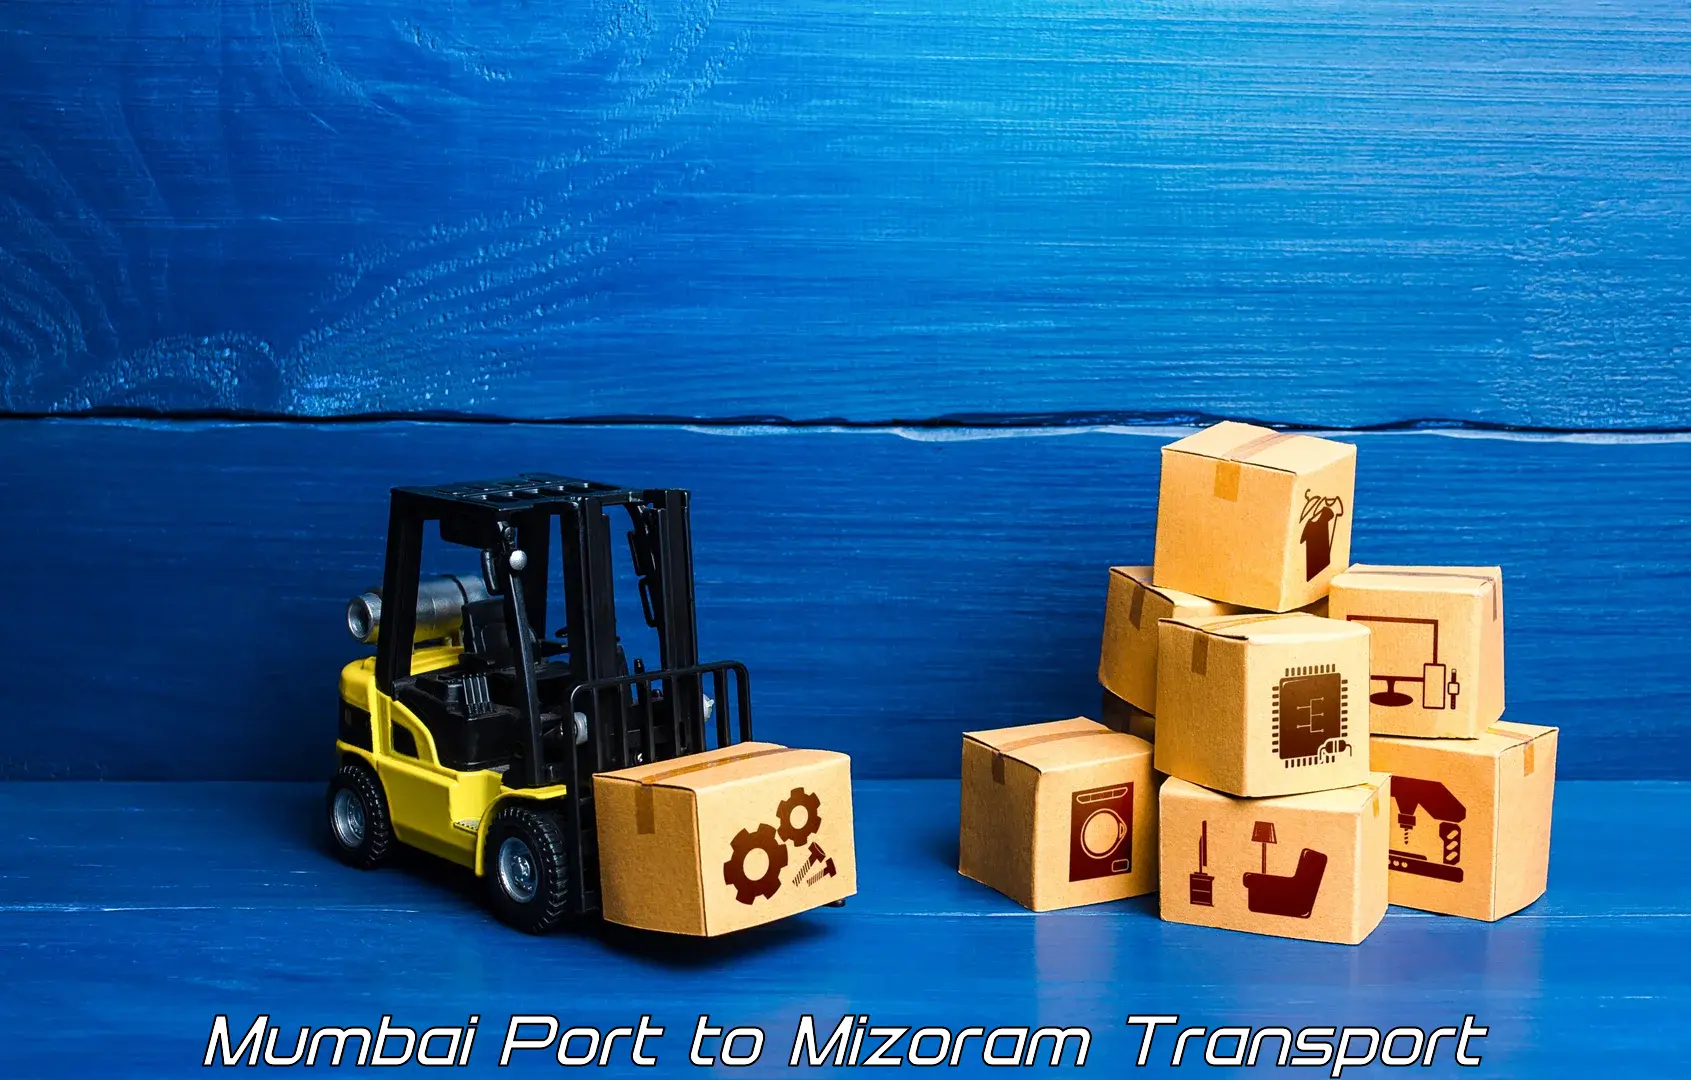 Daily transport service Mumbai Port to Kolasib